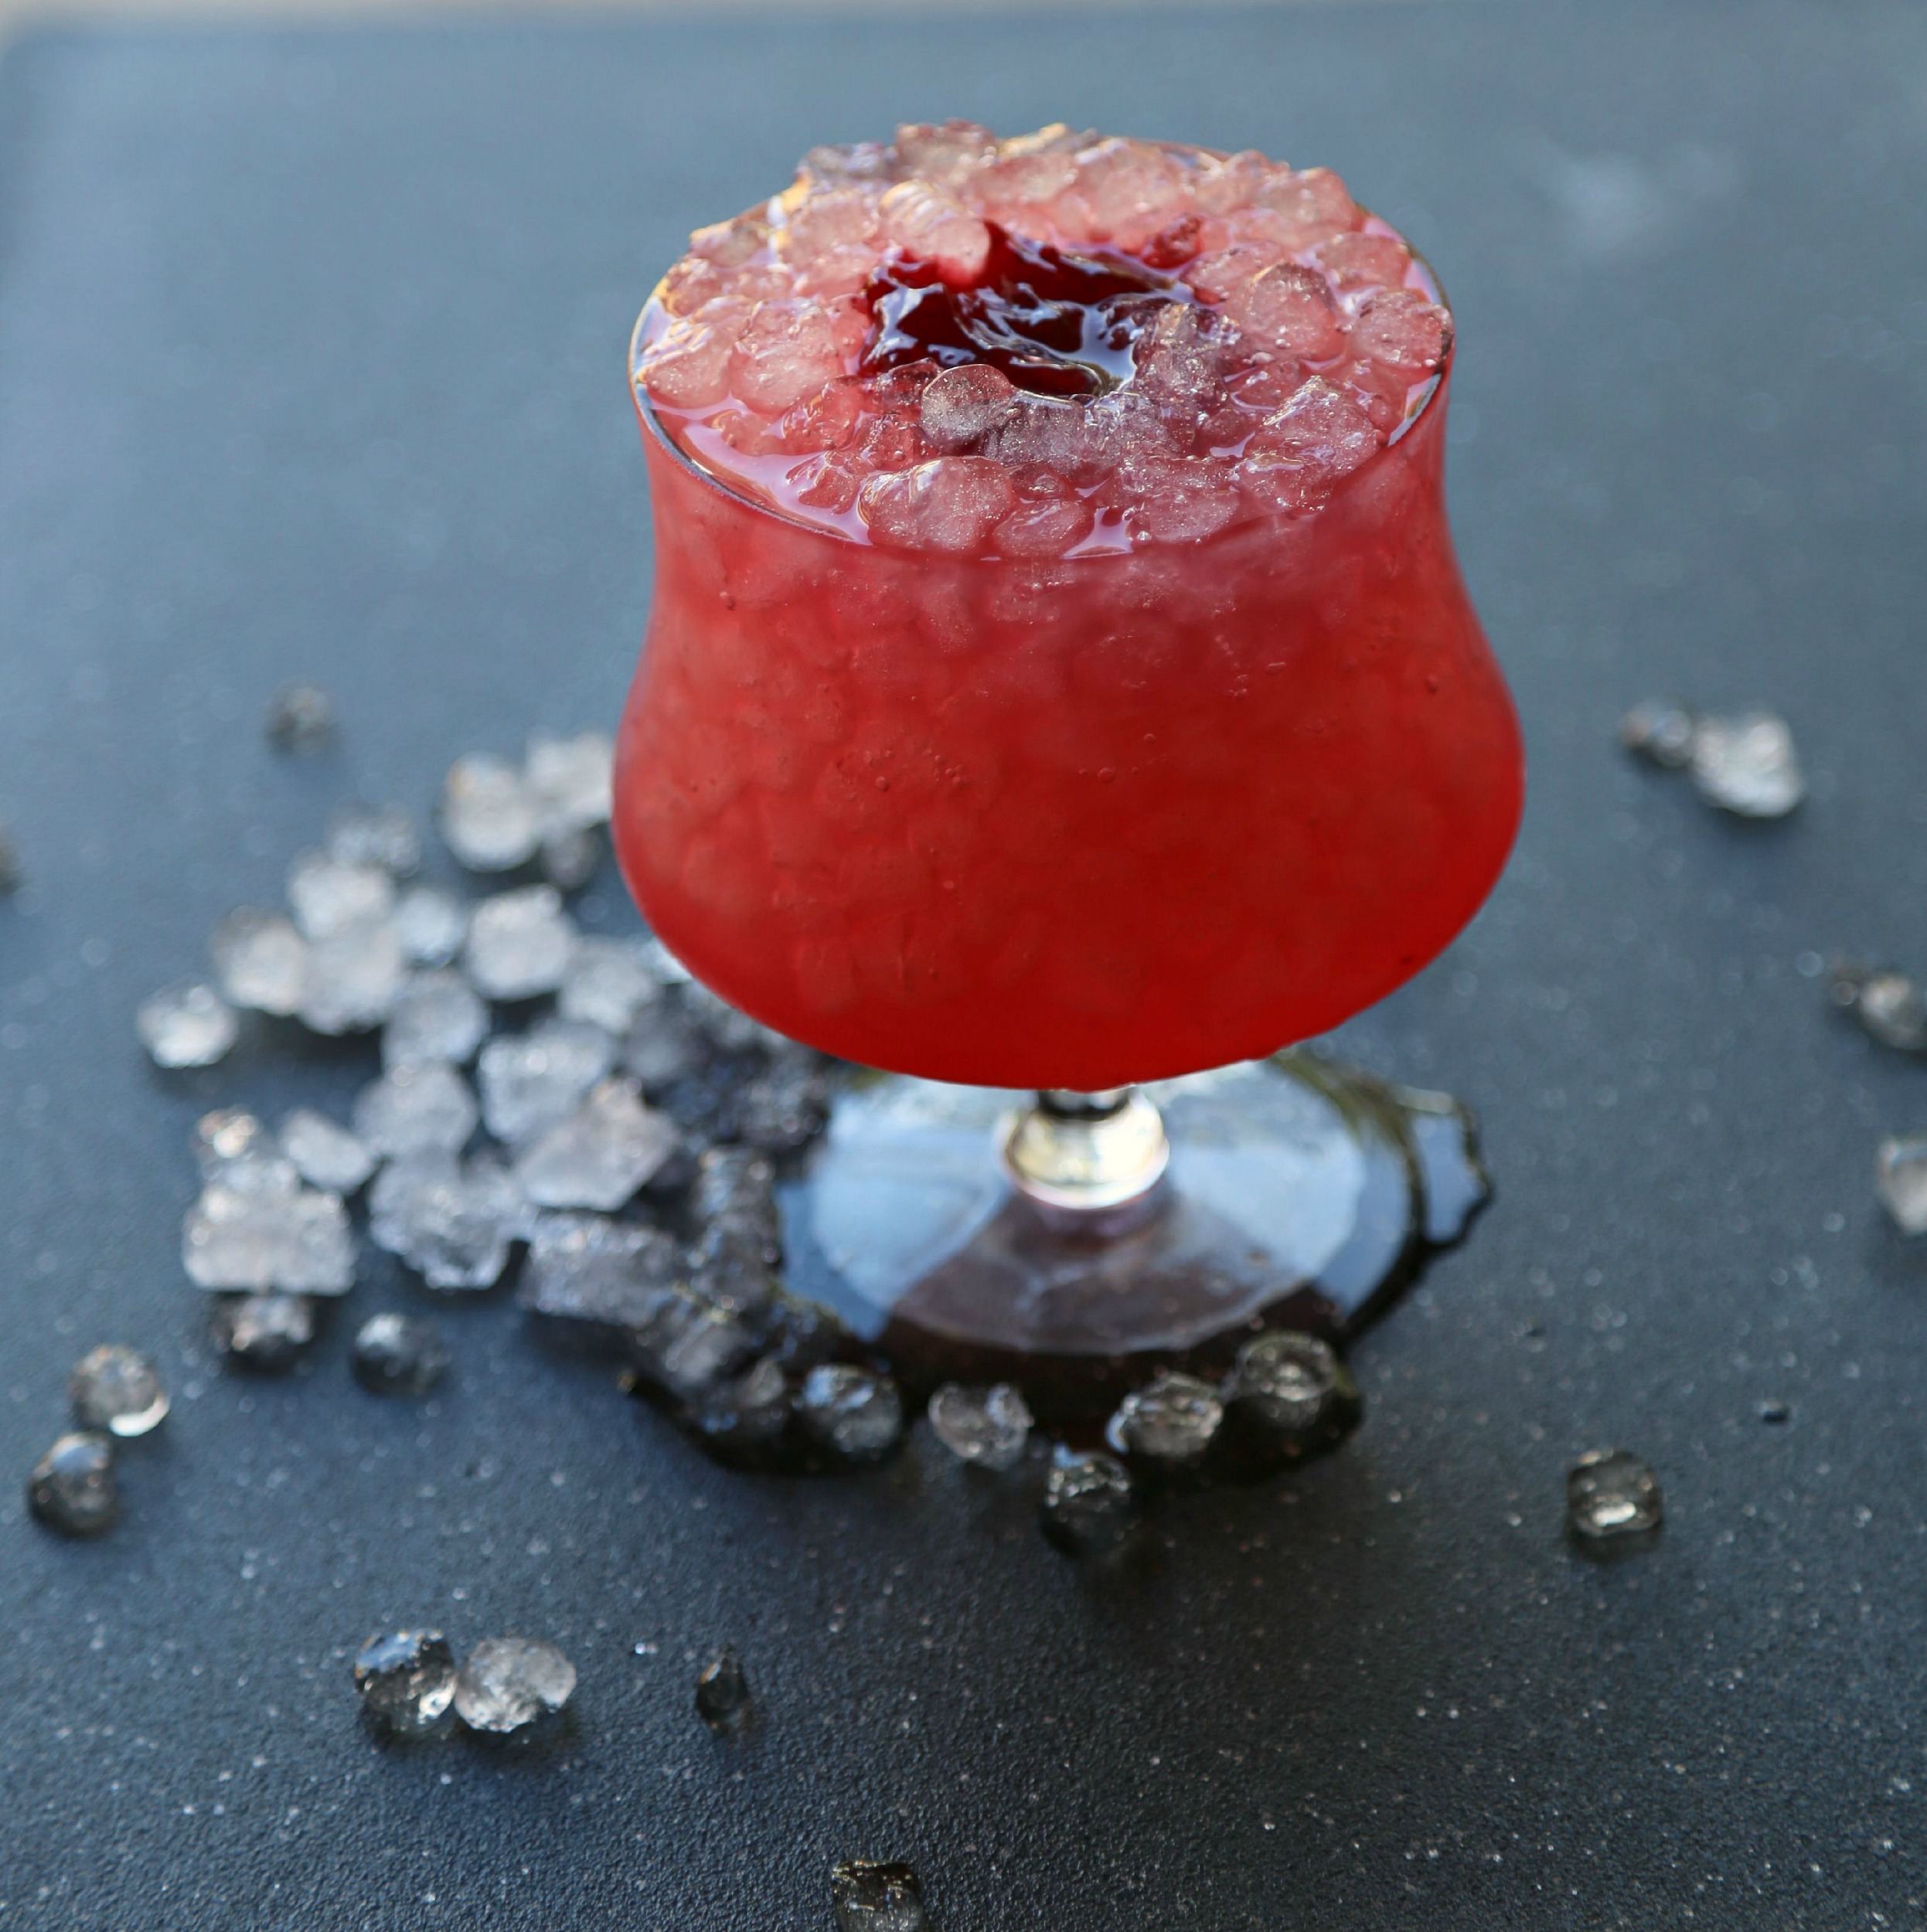 hibiscus-jam-cocktail-vianneyrodriguez-sweetlifebake-rum-cocktail